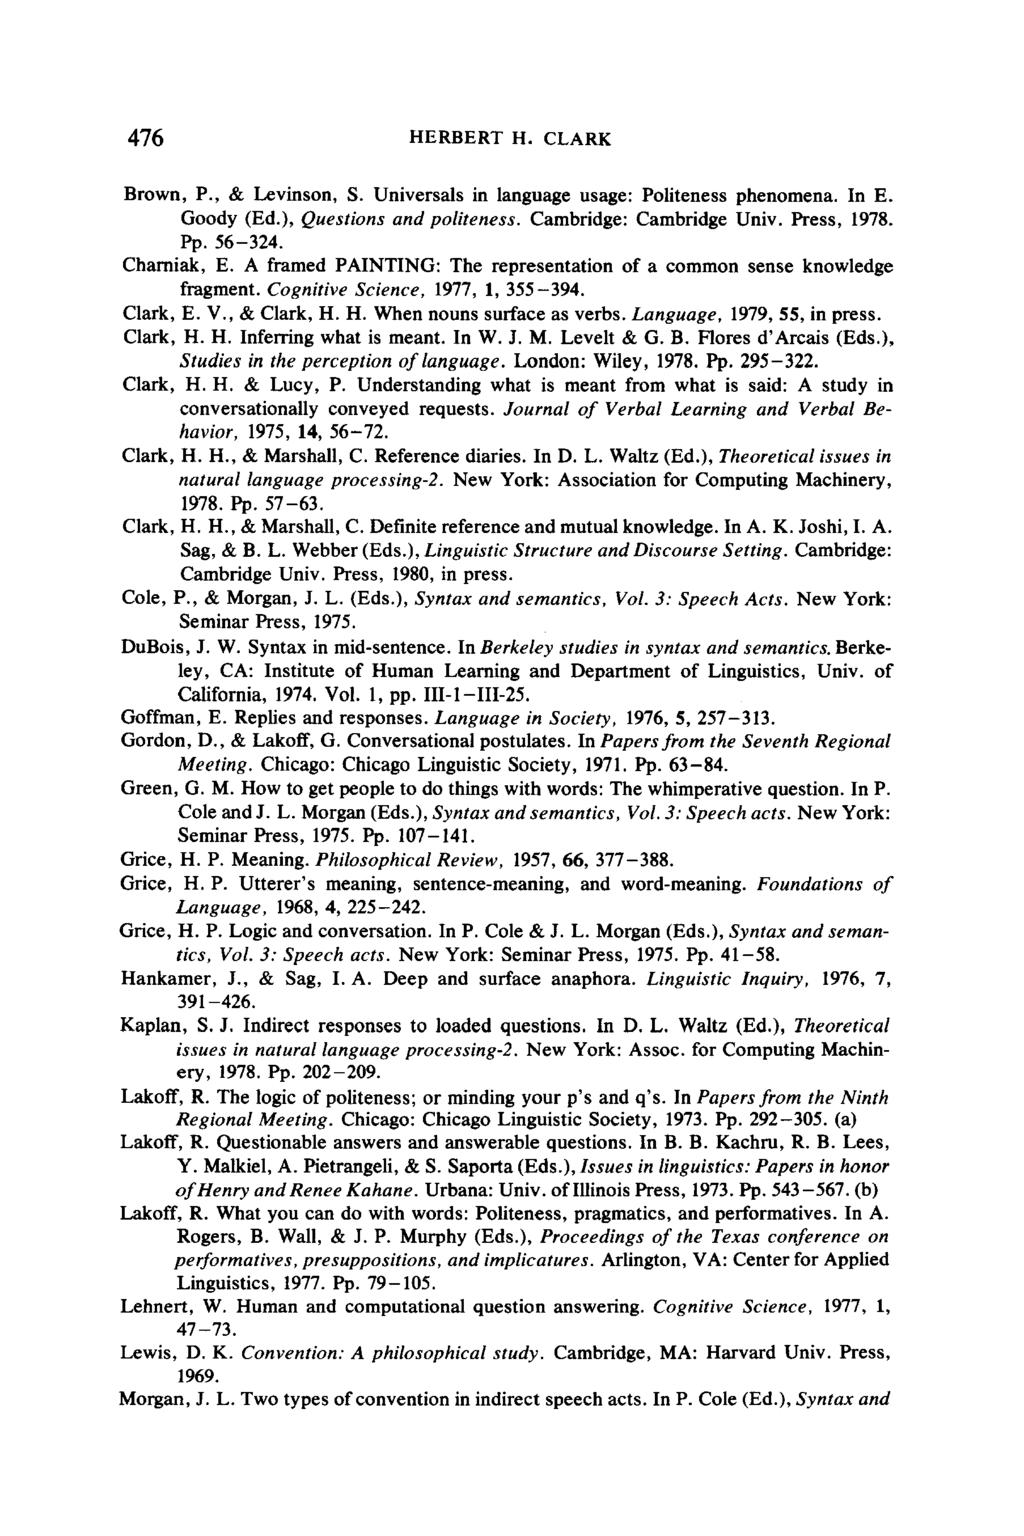 476 HERBERT H. CLARK Brown, P., & Levinson, S. Universals in language usage: Politeness phenomena. In E. Goody (Ed.), Questions and politeness. Cambridge: Cambridge Univ. Press, 1978. Pp. 56-324.